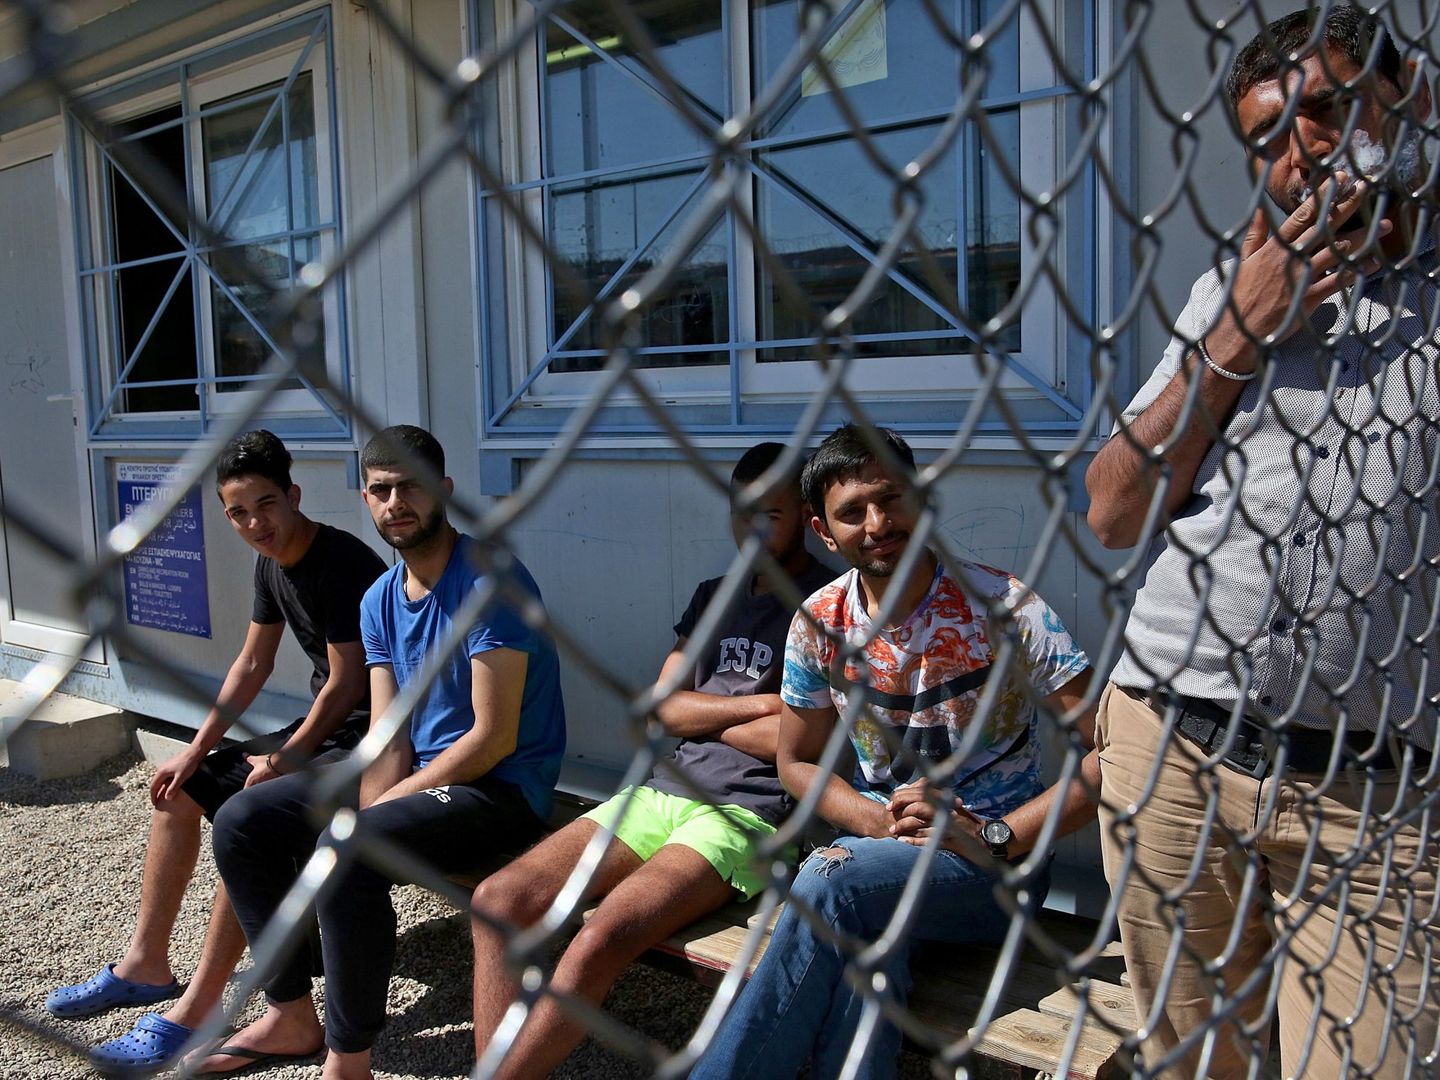  Imagen tomada el 11 de mayo de 2018 que muestra a un grupo de migrantes en el Centro de Identificación de Refugiados en Fylakio, en Grecia | EFE